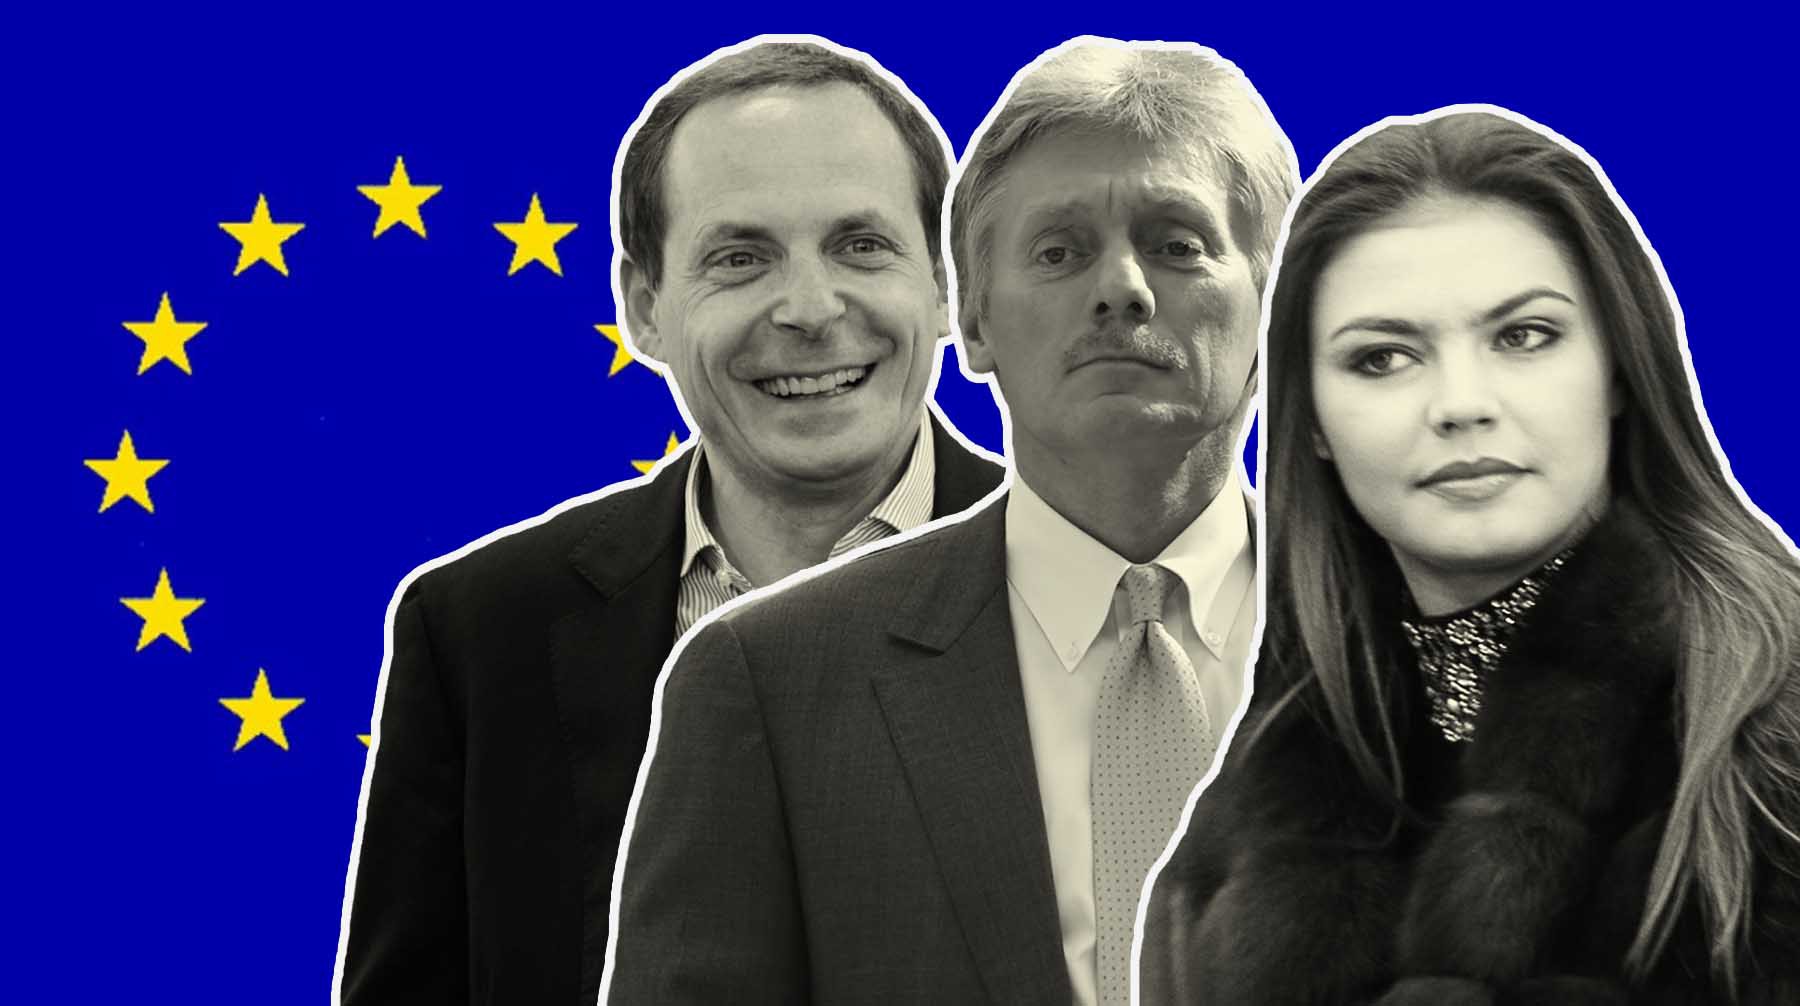 Dailystorm - ЕС ввел санкции против семьи Пескова, сооснователя «Яндекса» Воложа и Кабаевой